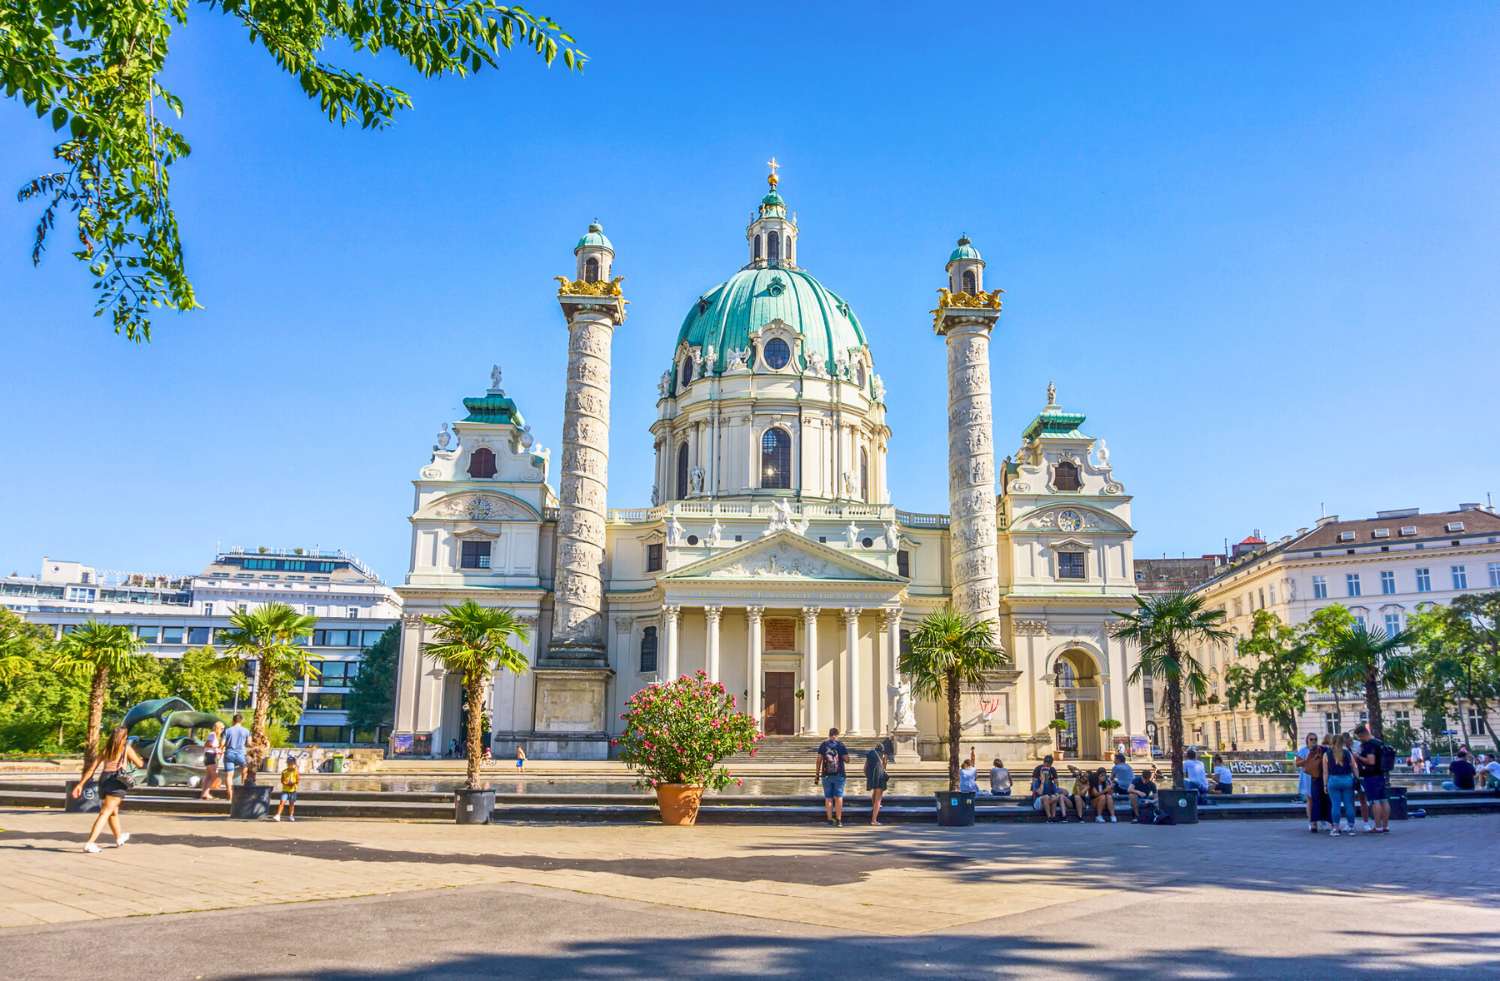 Der Dom in Wien, Österreich.